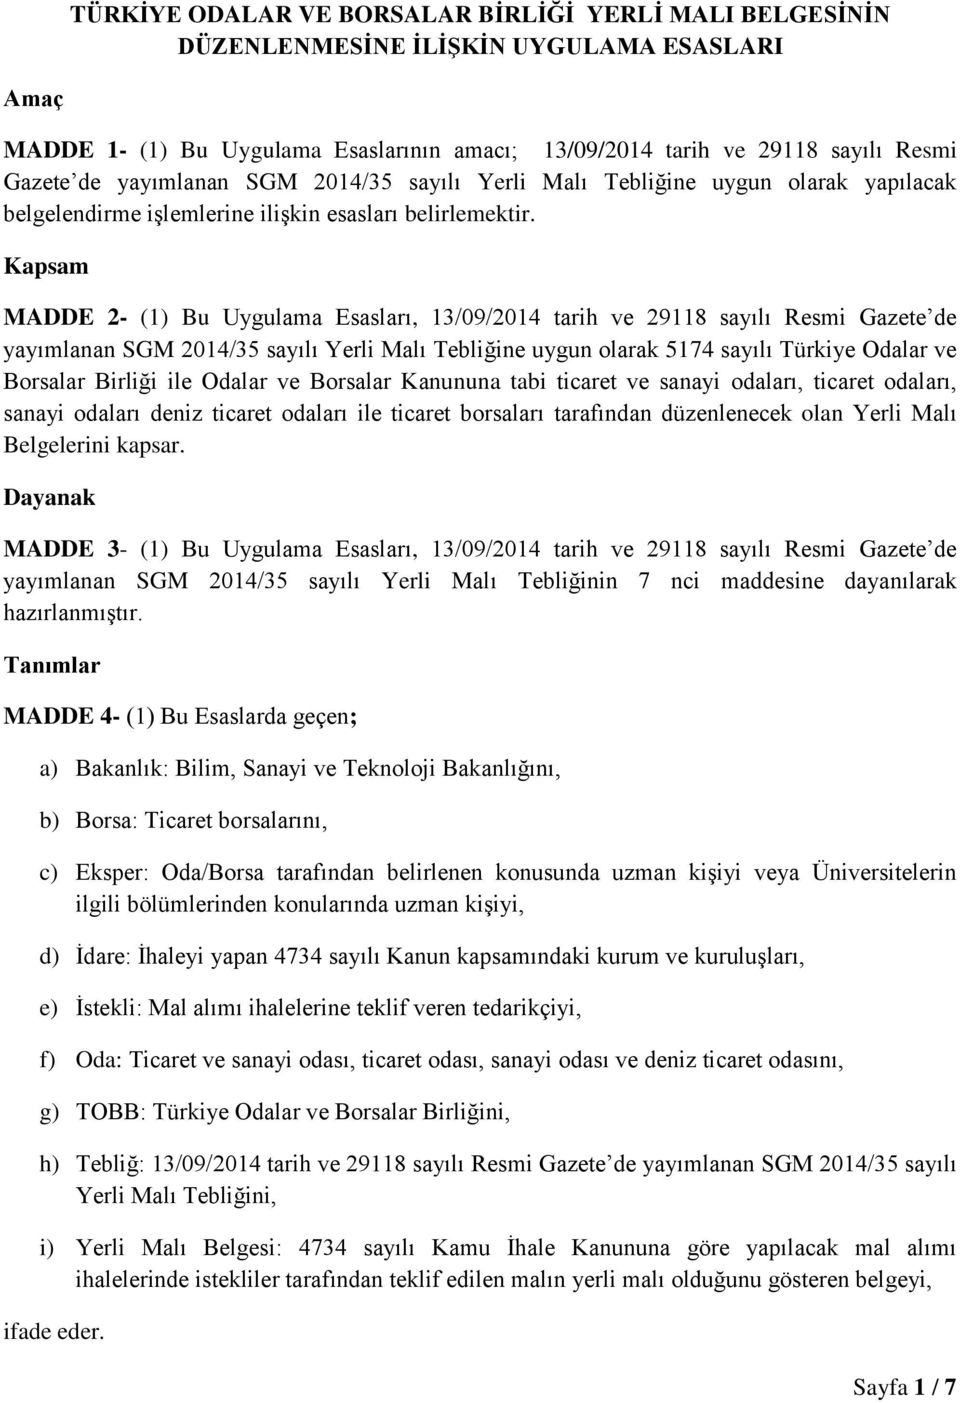 Kapsam MADDE 2- (1) Bu Uygulama Esasları, 13/09/2014 tarih ve 29118 sayılı Resmi Gazete de yayımlanan SGM 2014/35 sayılı Yerli Malı Tebliğine uygun olarak 5174 sayılı Türkiye Odalar ve Borsalar